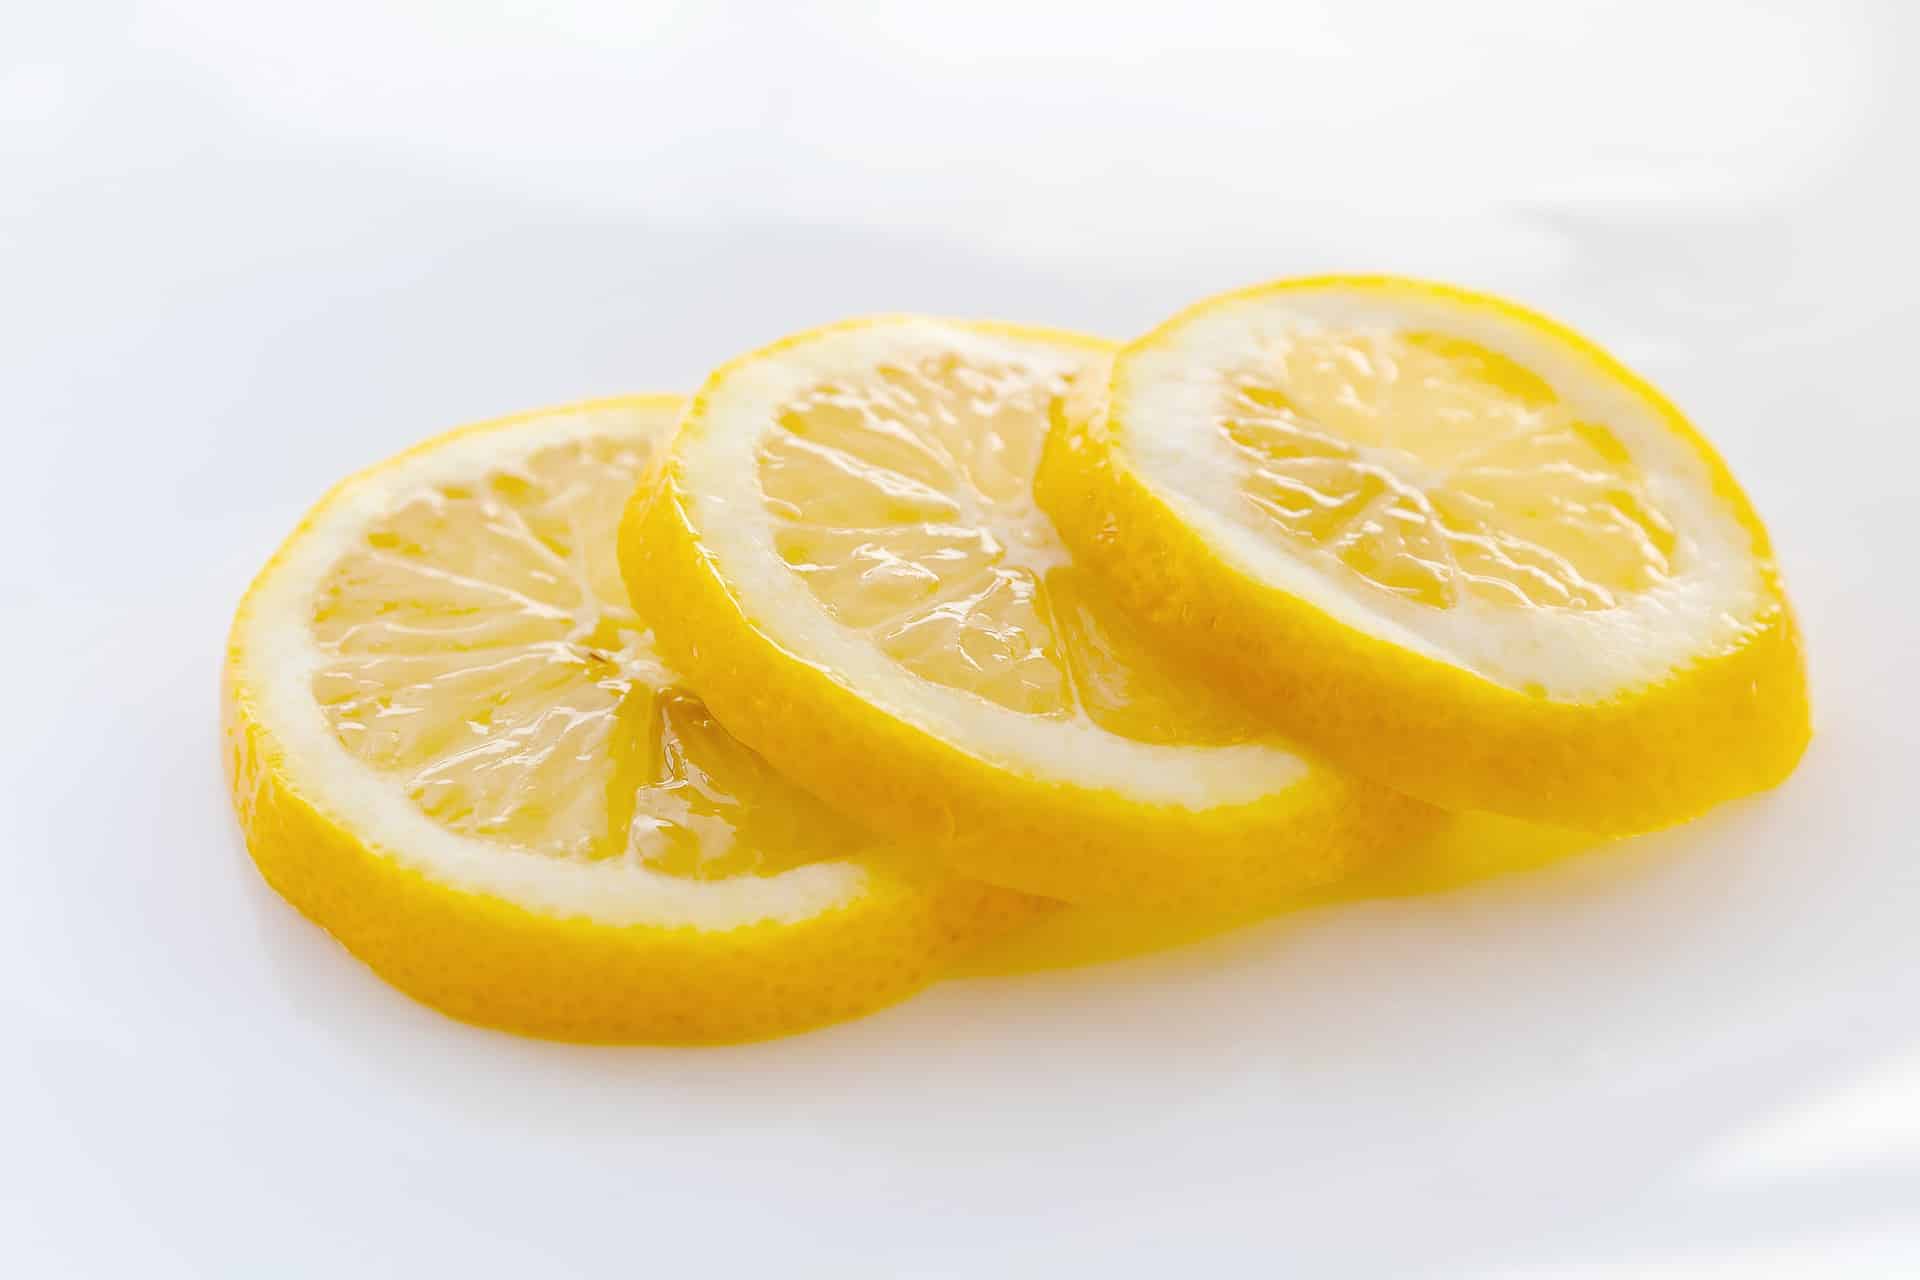 Zkuste nakrojit citrón a připravit si jedinečný přírodní produkt